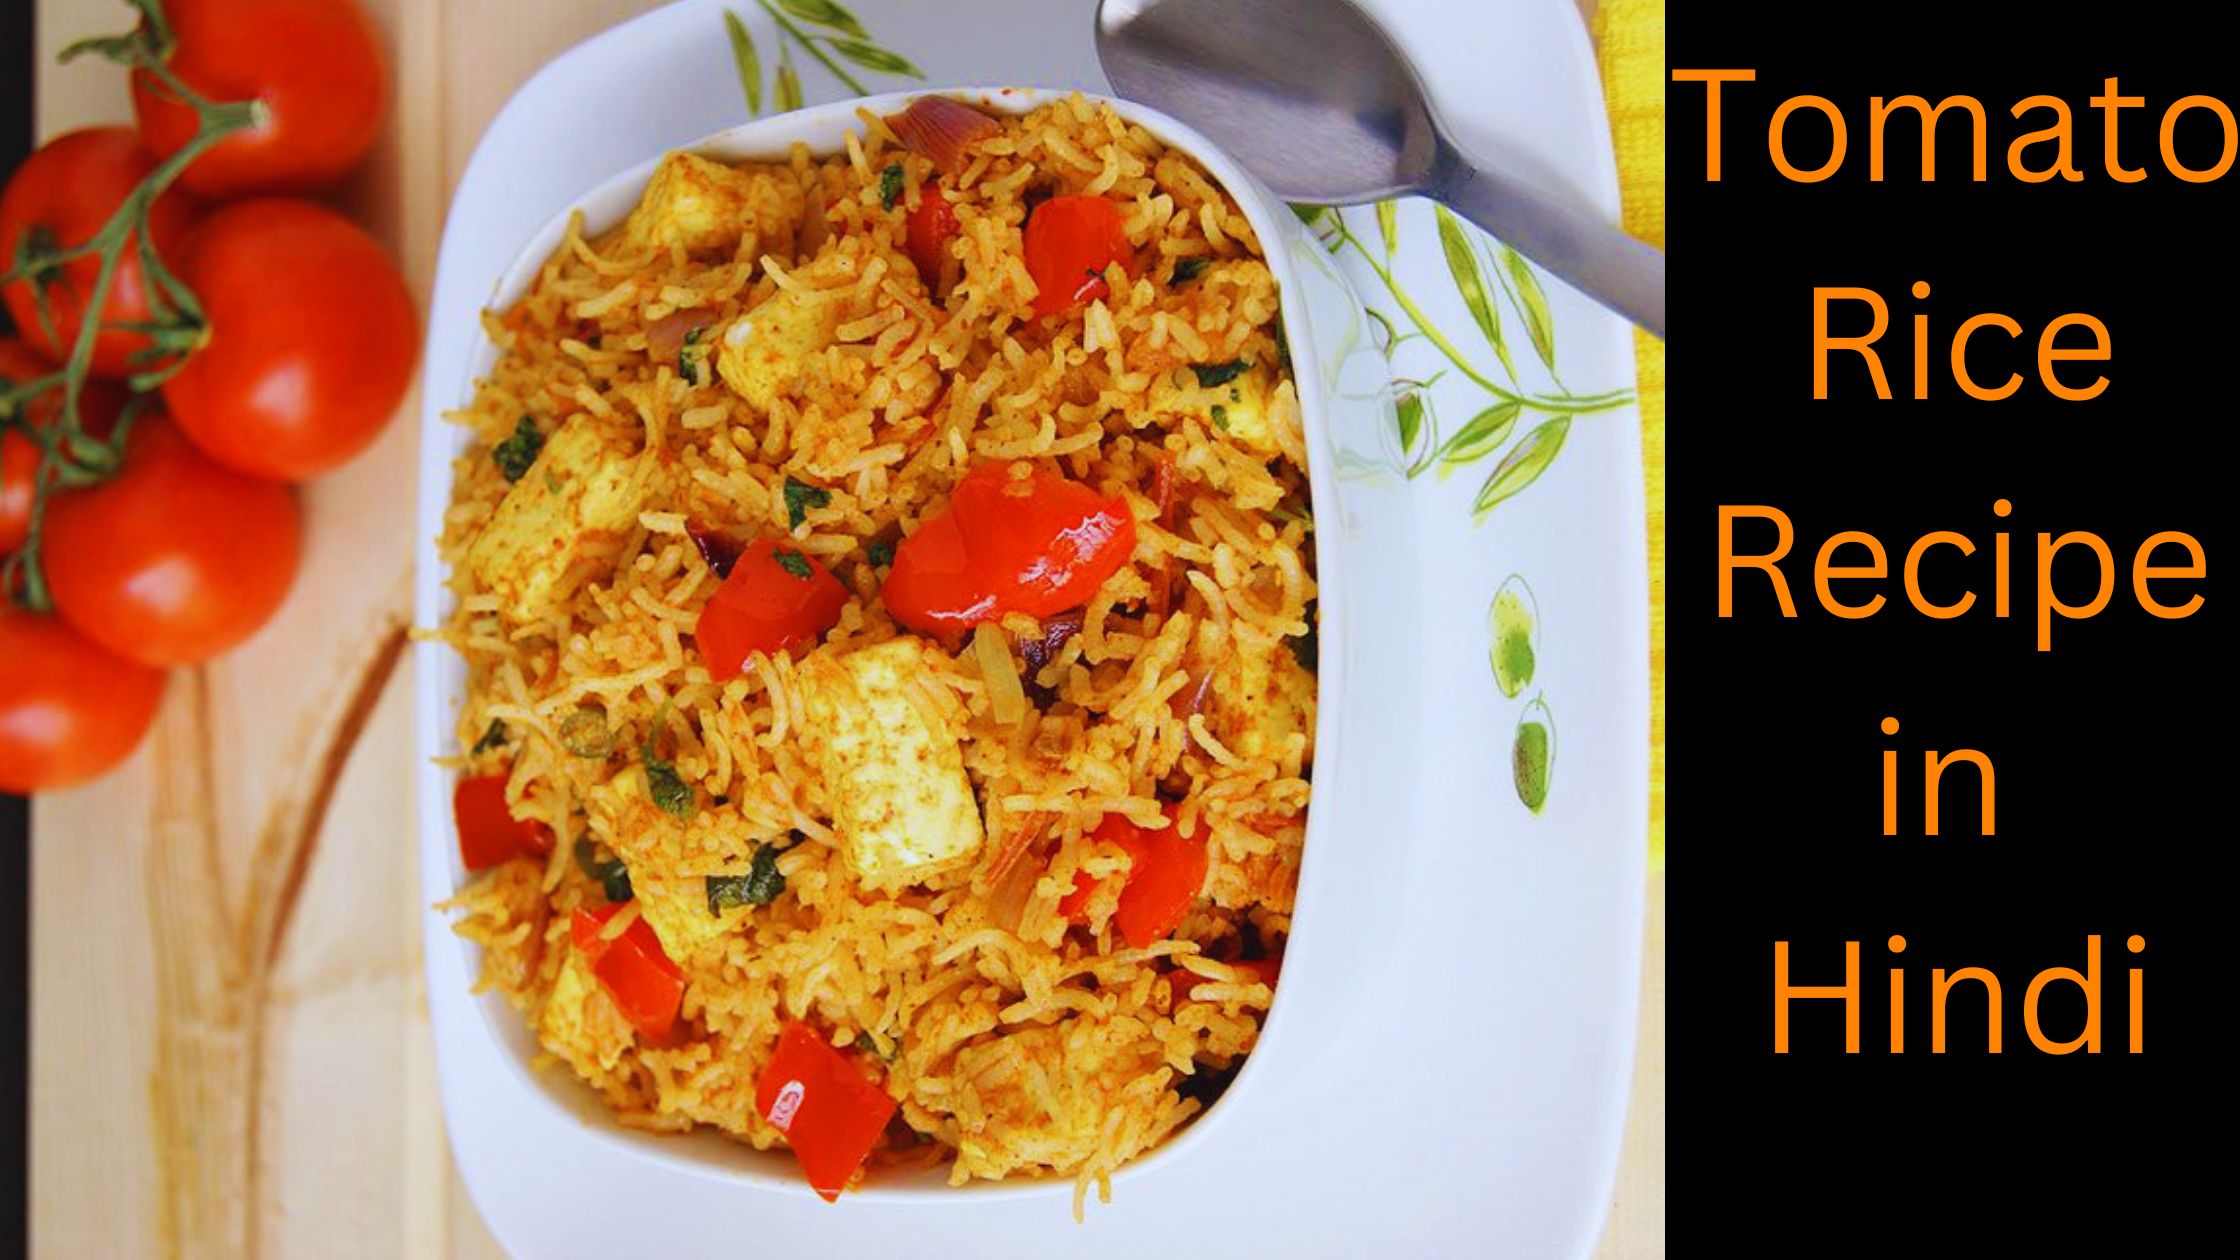 Tomato Rice Recipe In Hindi